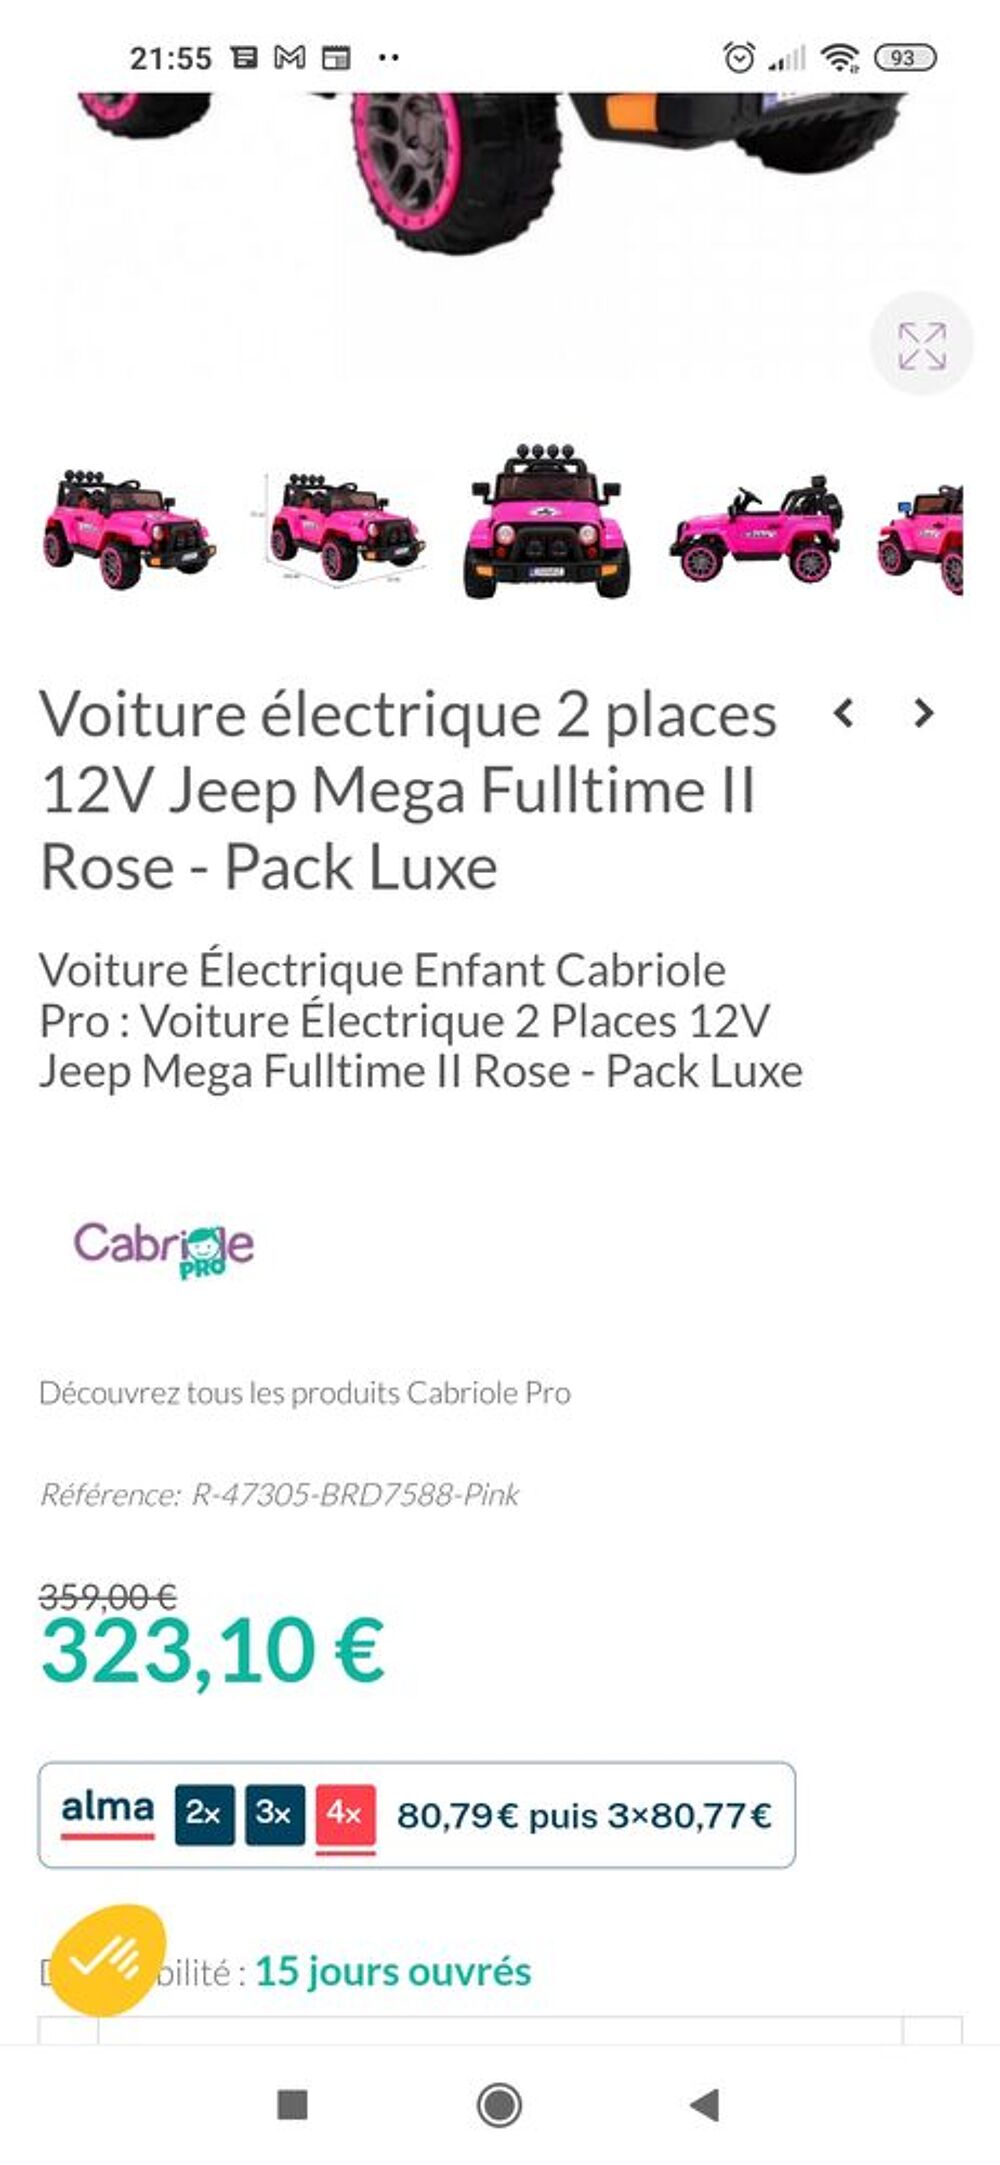 Voiture électrique 2 places 12v jeep mega fulltime rose - pack luxe